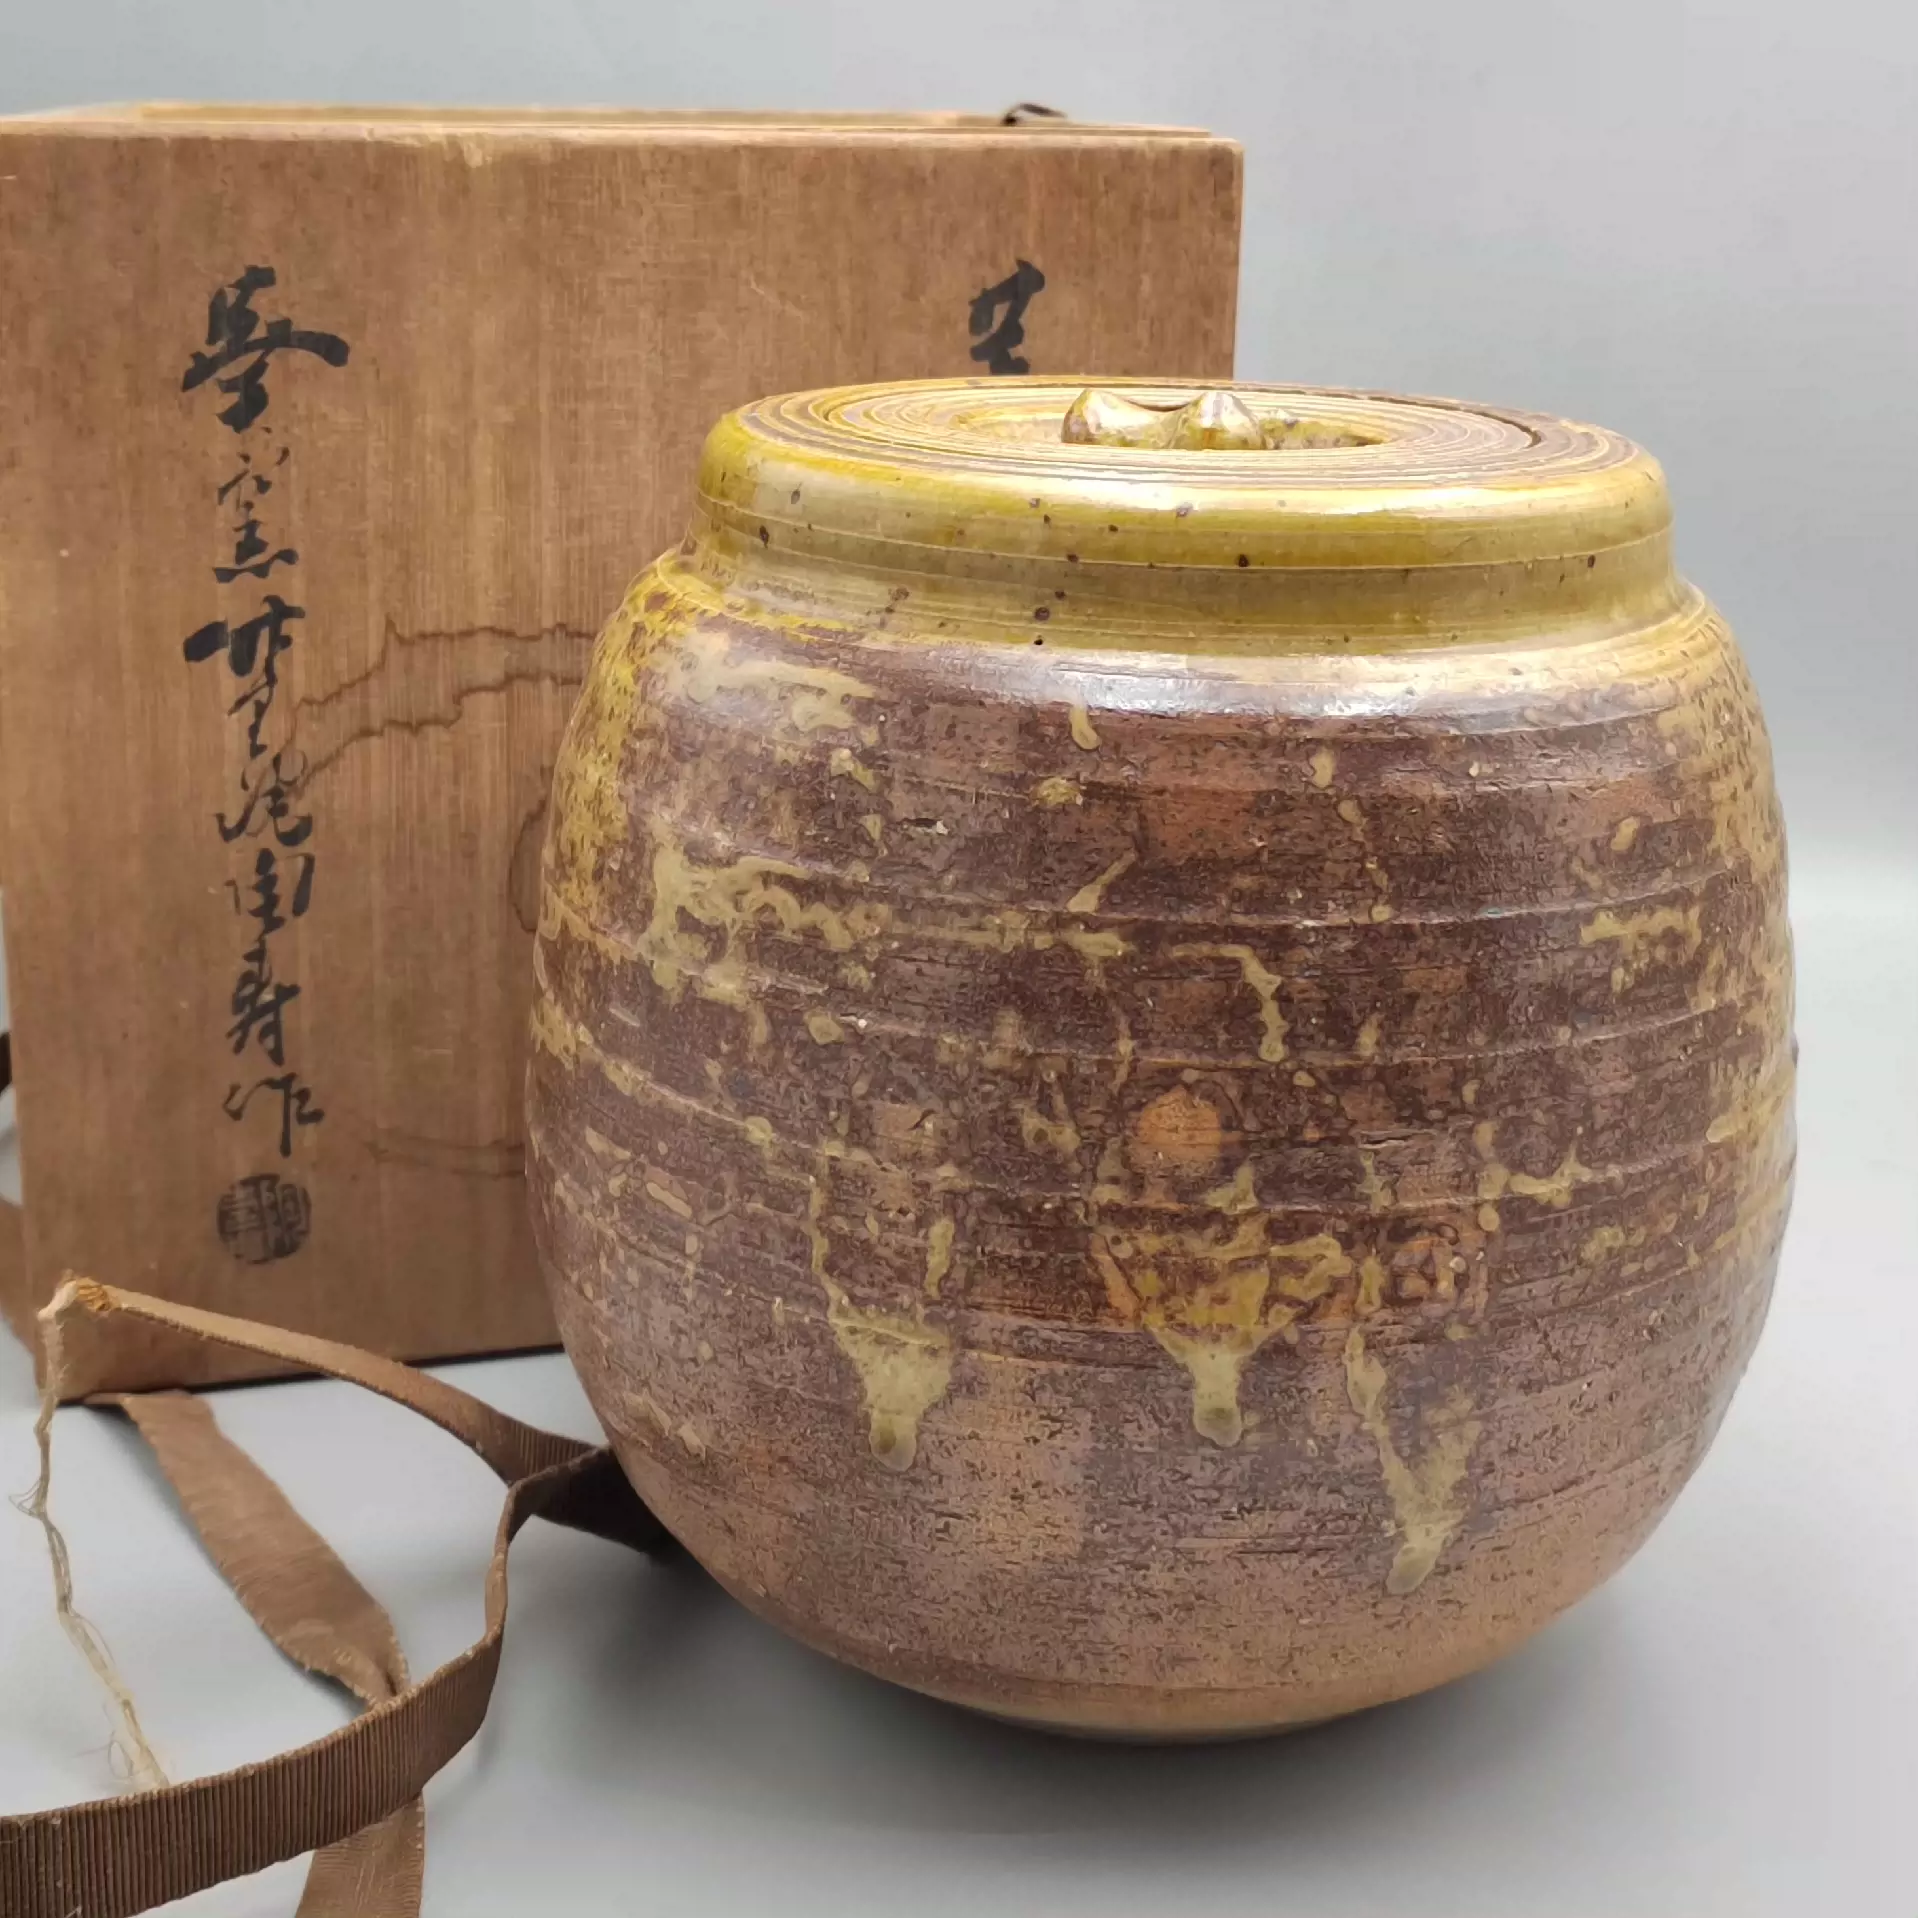 中古日本回流瓷器陶寿作陶瓷盖物水指茶叶罐茶道具，原盒。-Taobao